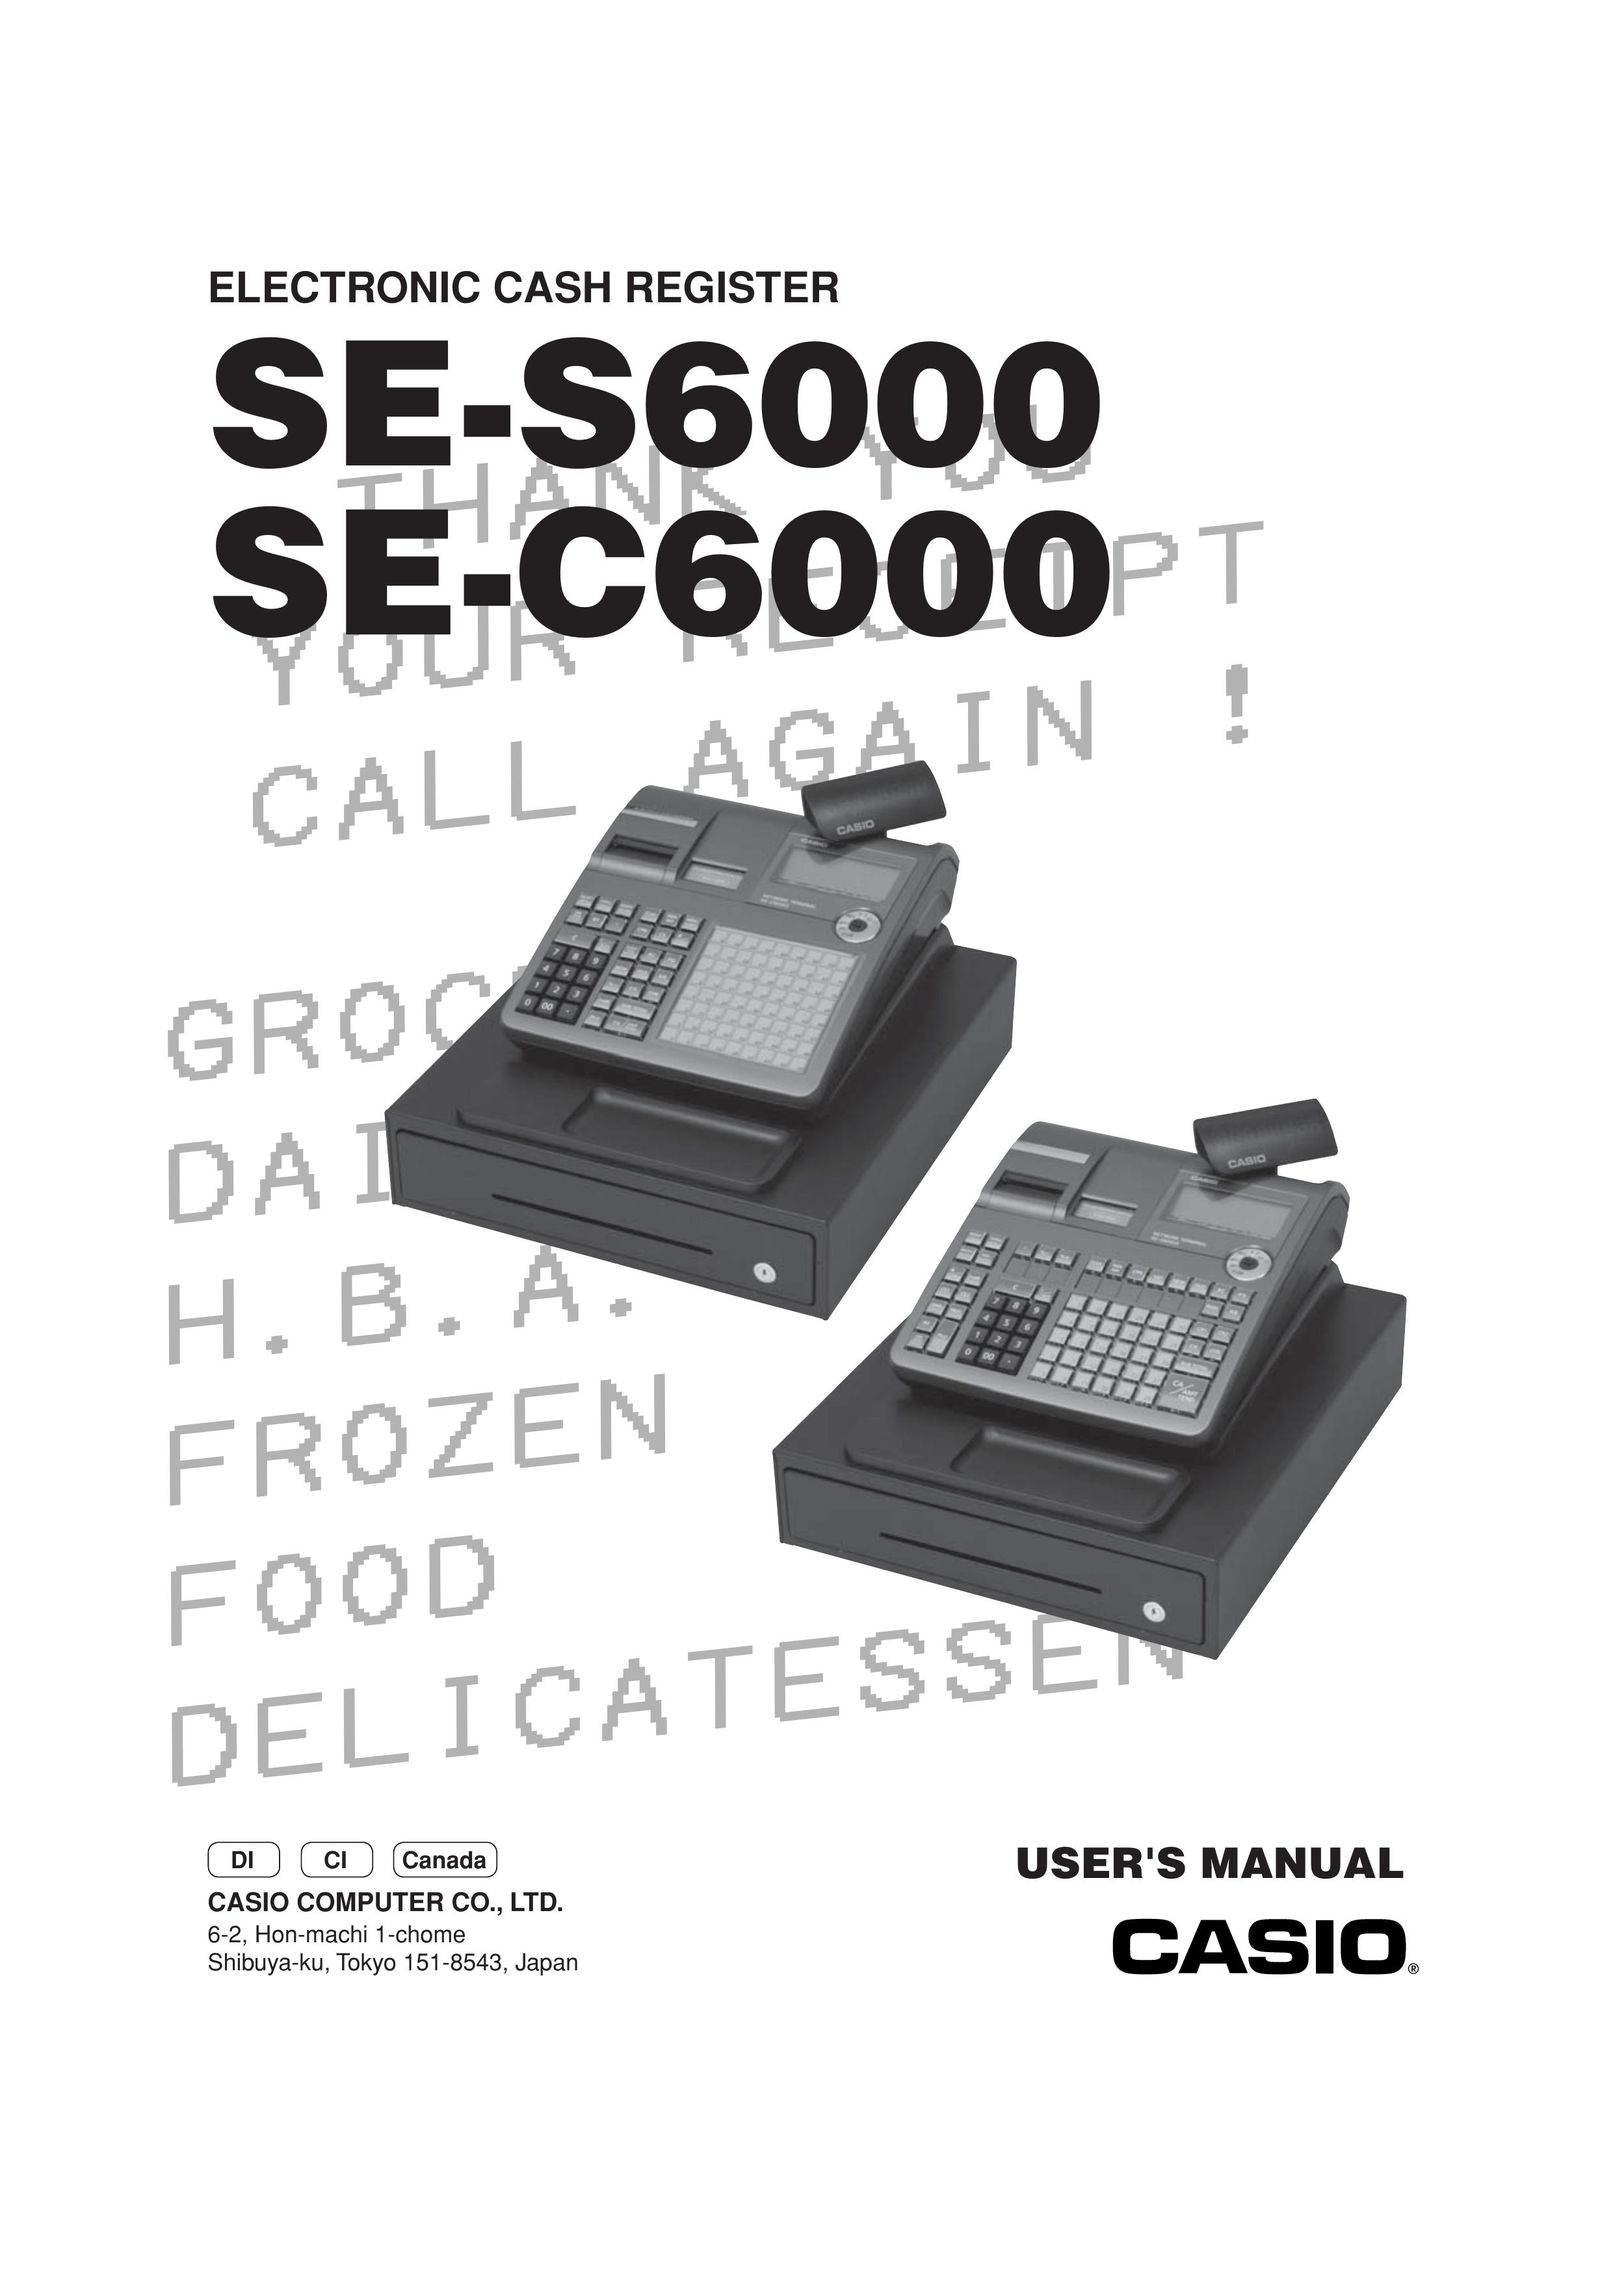 Casio SE-C6000 Cash Register User Manual